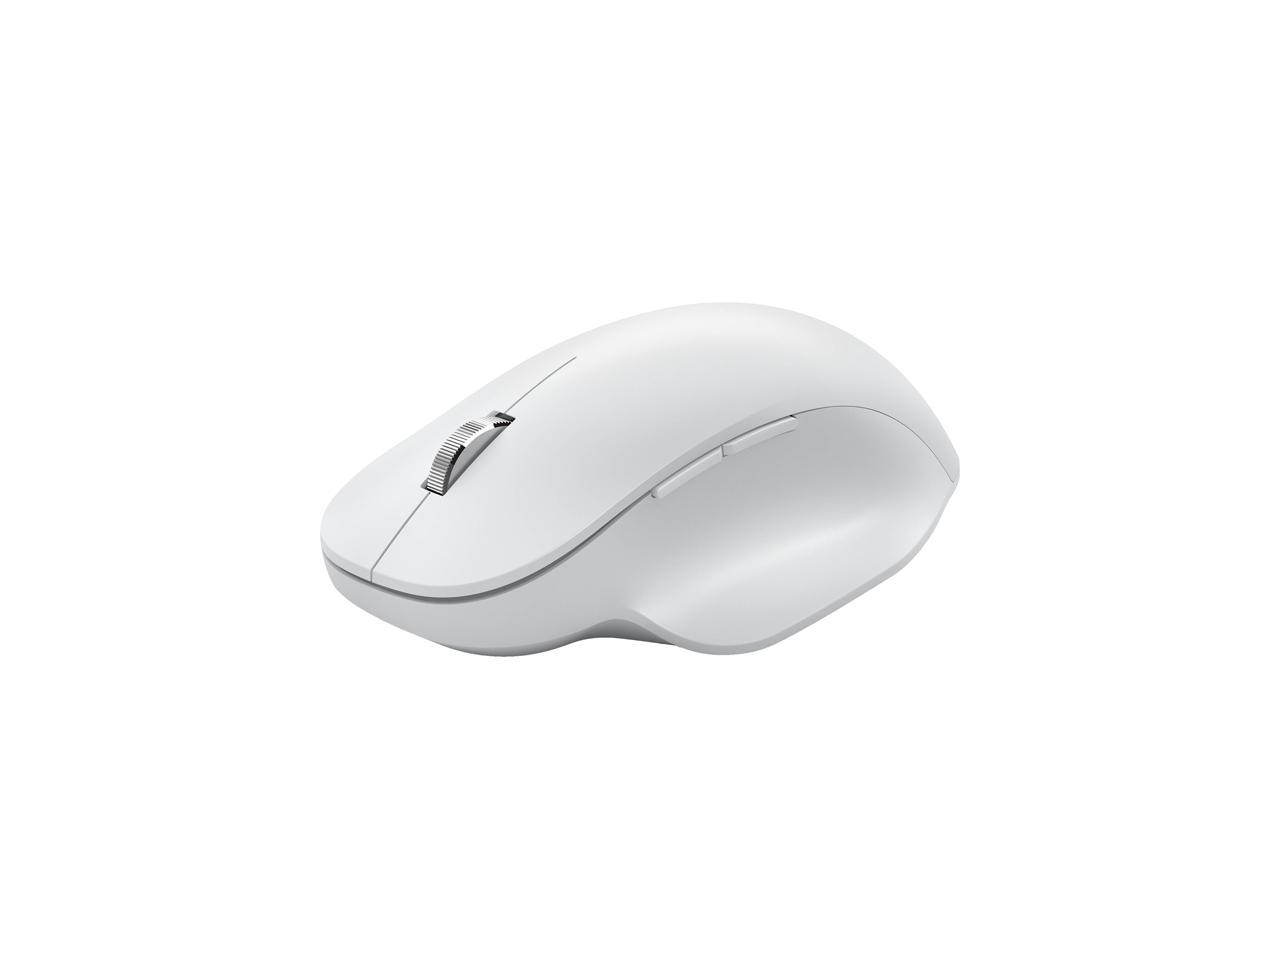 Microsoft Bluetooth Ergonomic Mouse - Glacier - Newegg.com